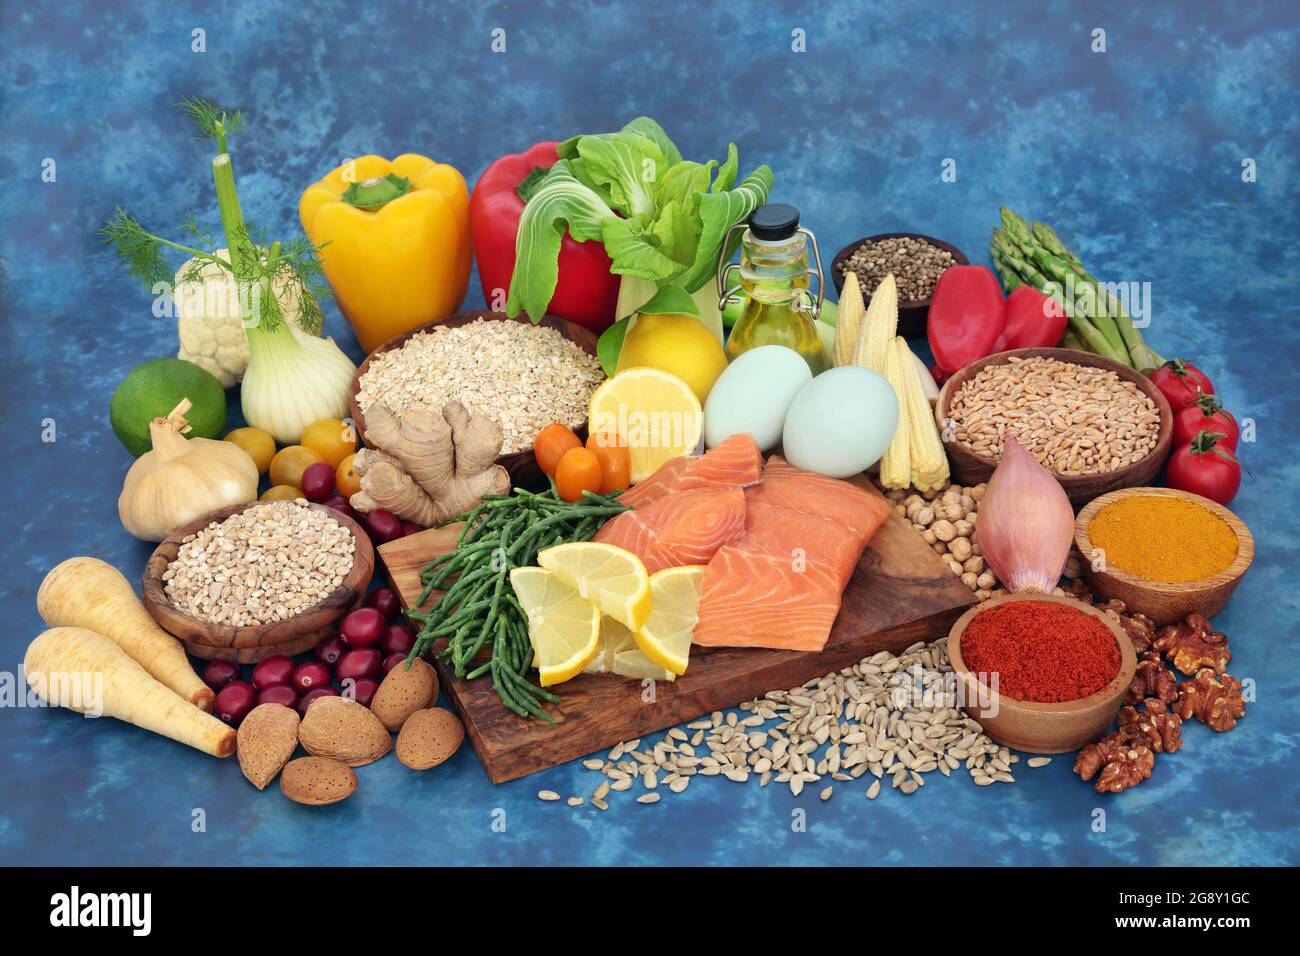 Cibo sano per aumentare il sistema immunitario con una grande raccolta di alimenti per la salute. Alto in proteine, fibre, antiossidanti, omega 3, latticini, carb intelligenti. Foto Stock